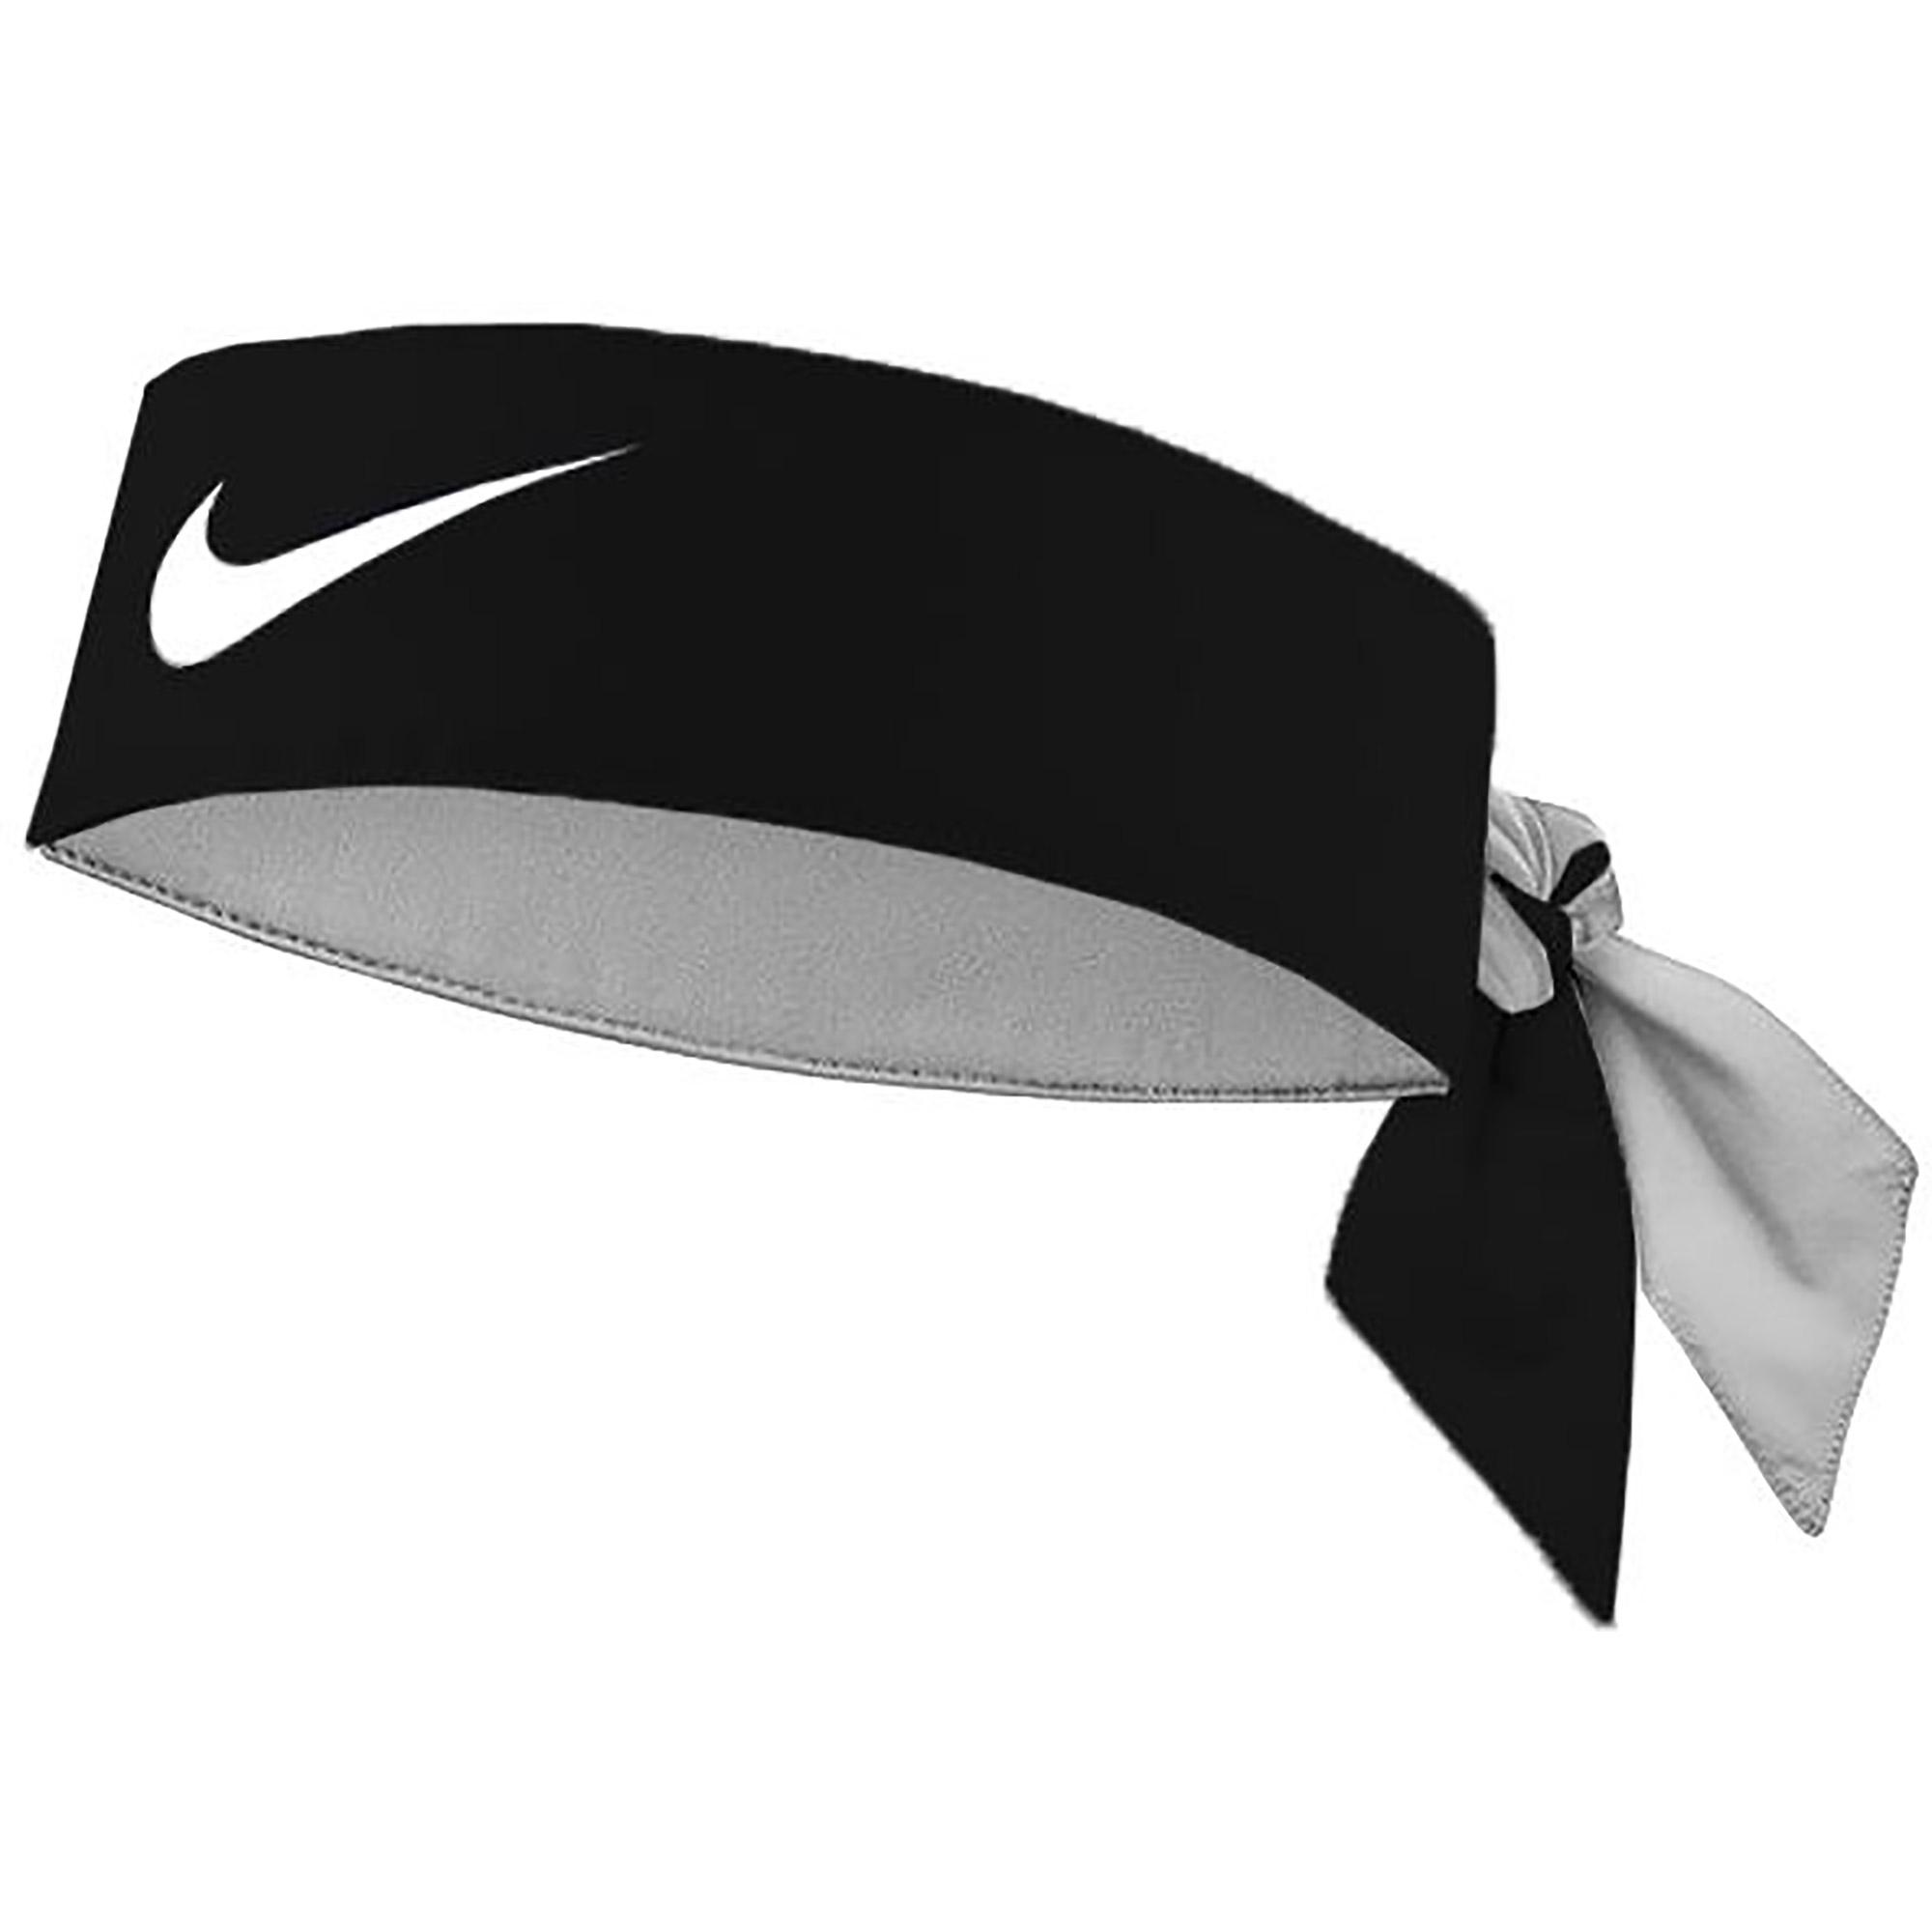 Nike Dry Headband - Black/White - Tennisnuts.com